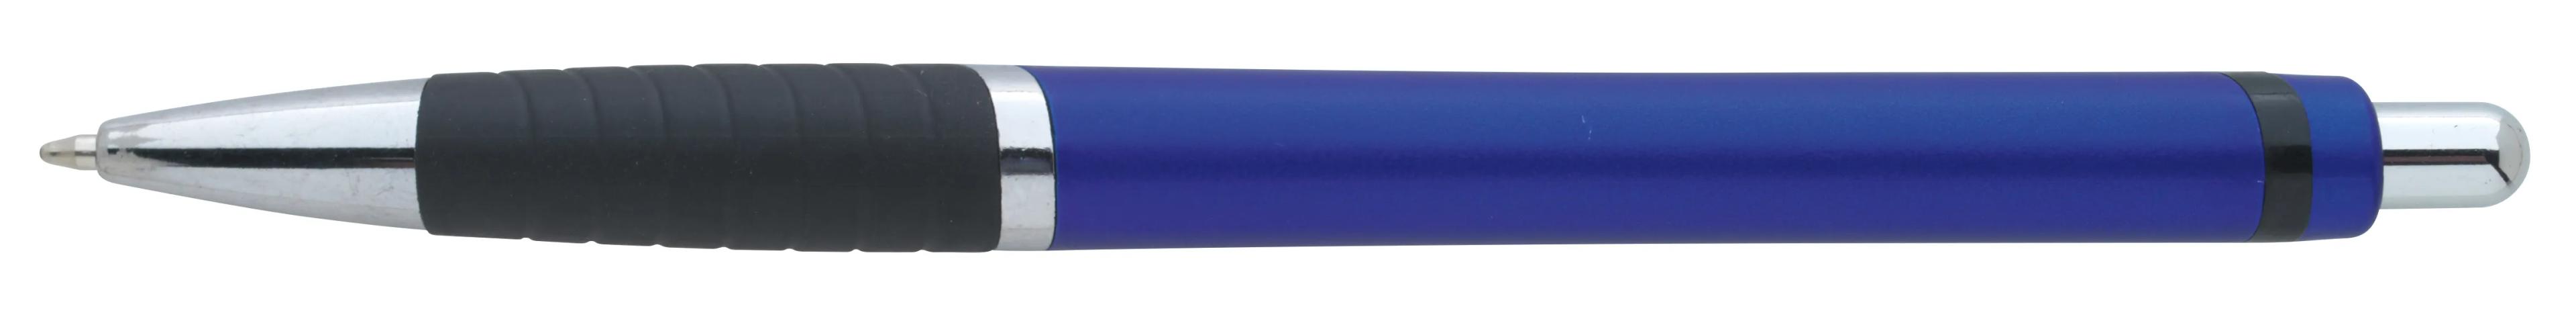 Arrow Metallic Pen 2 of 43